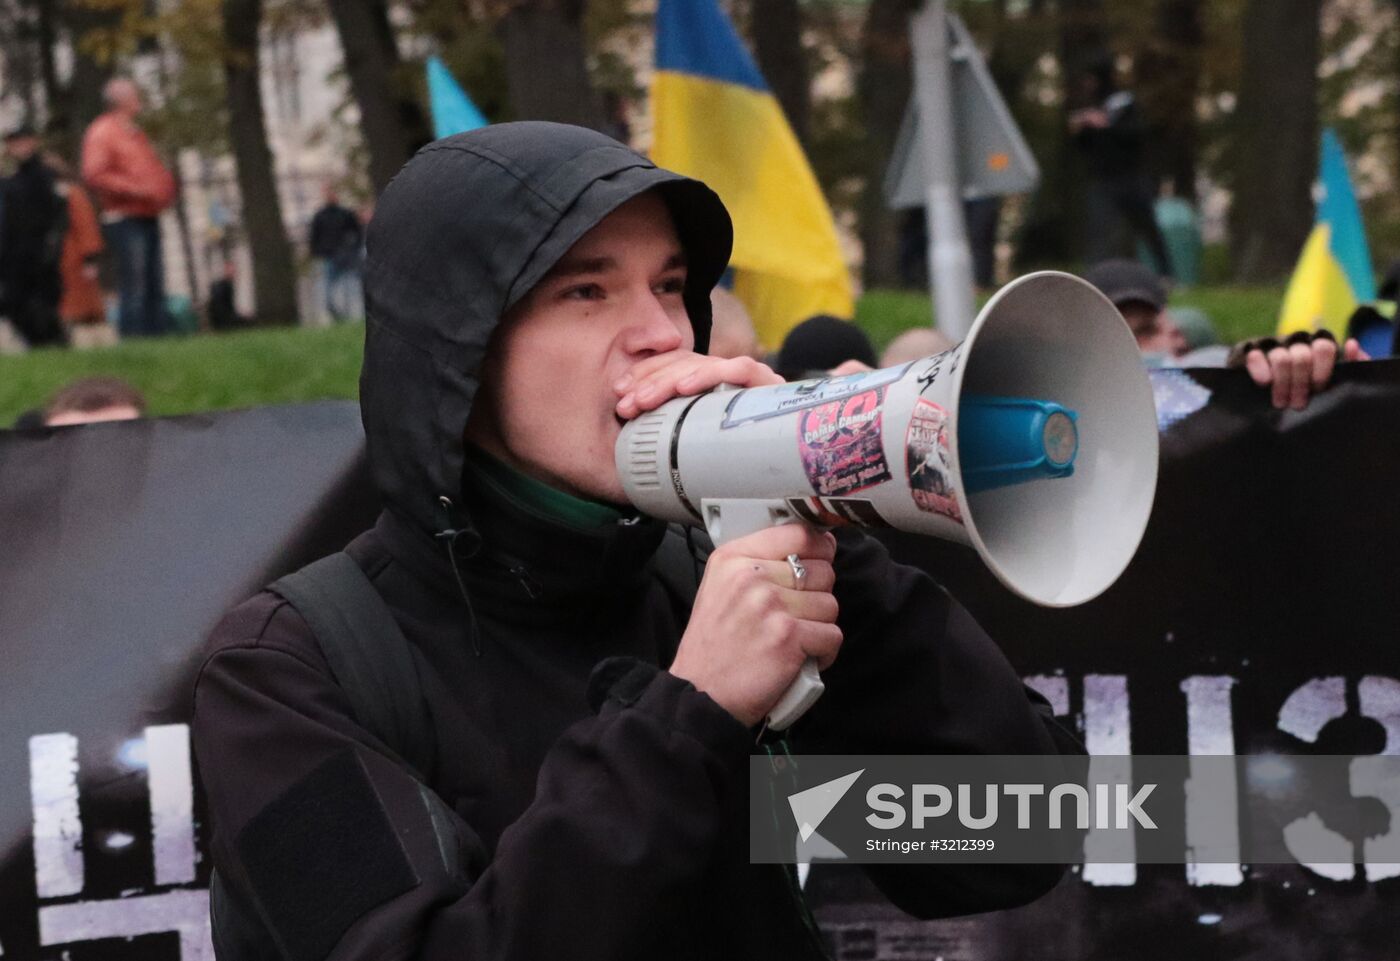 Rallies of nationalists in Ukraine